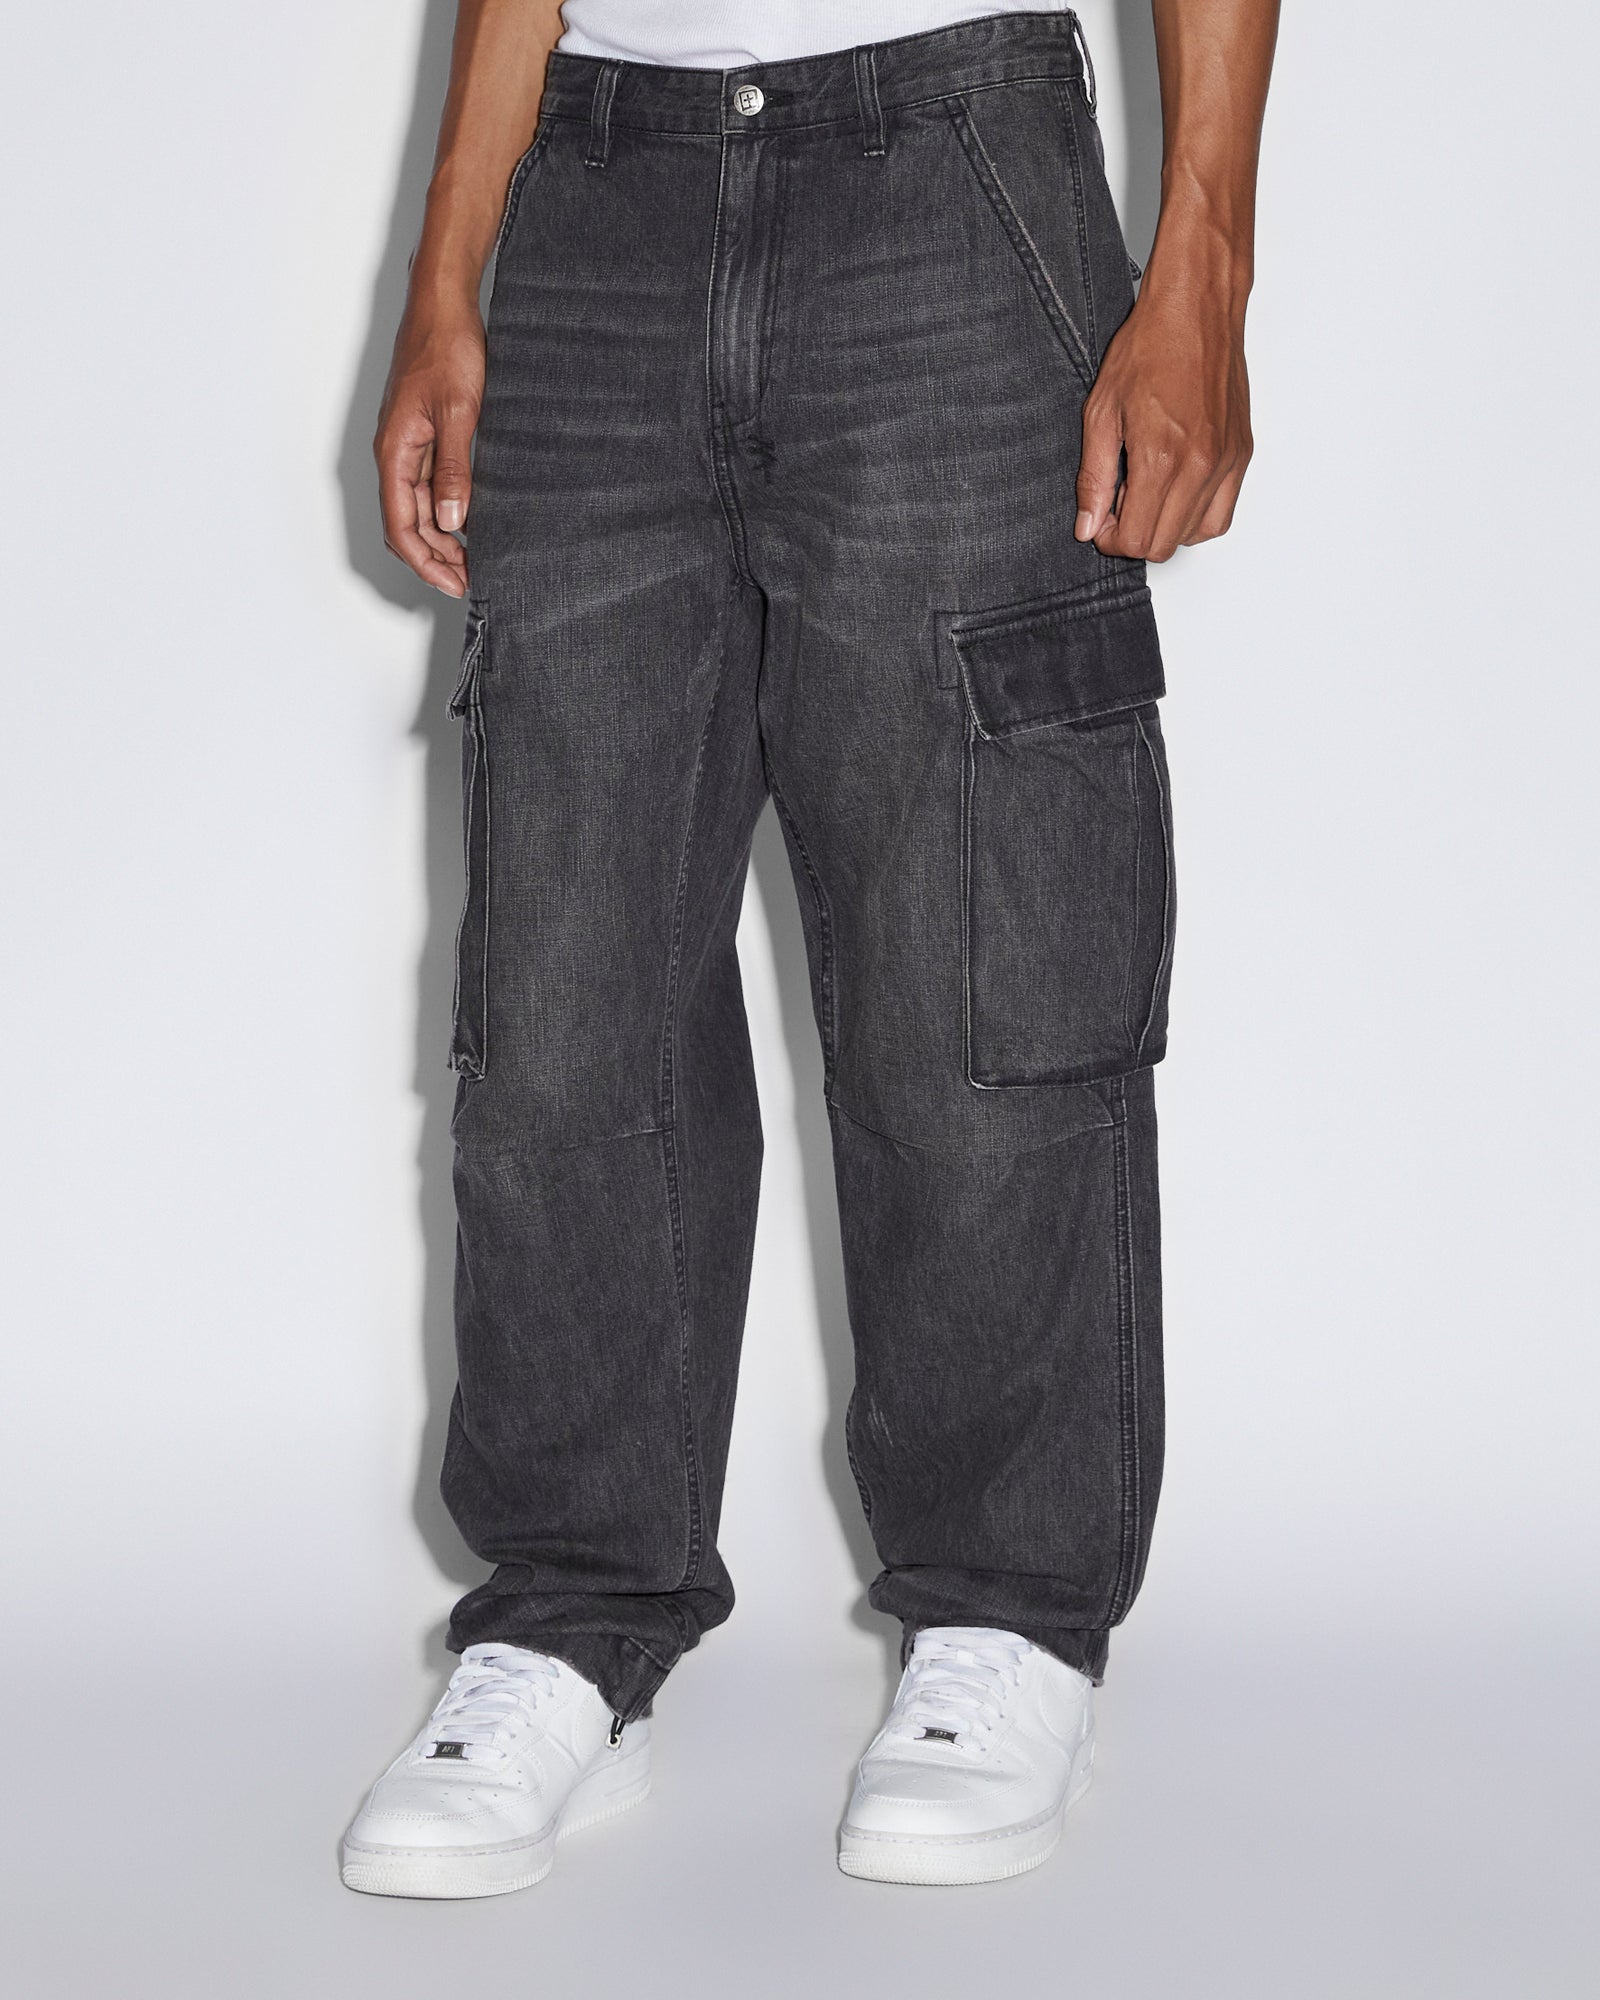 Men's Pants - Designer Track Pants & Slacks | Ksubi ++